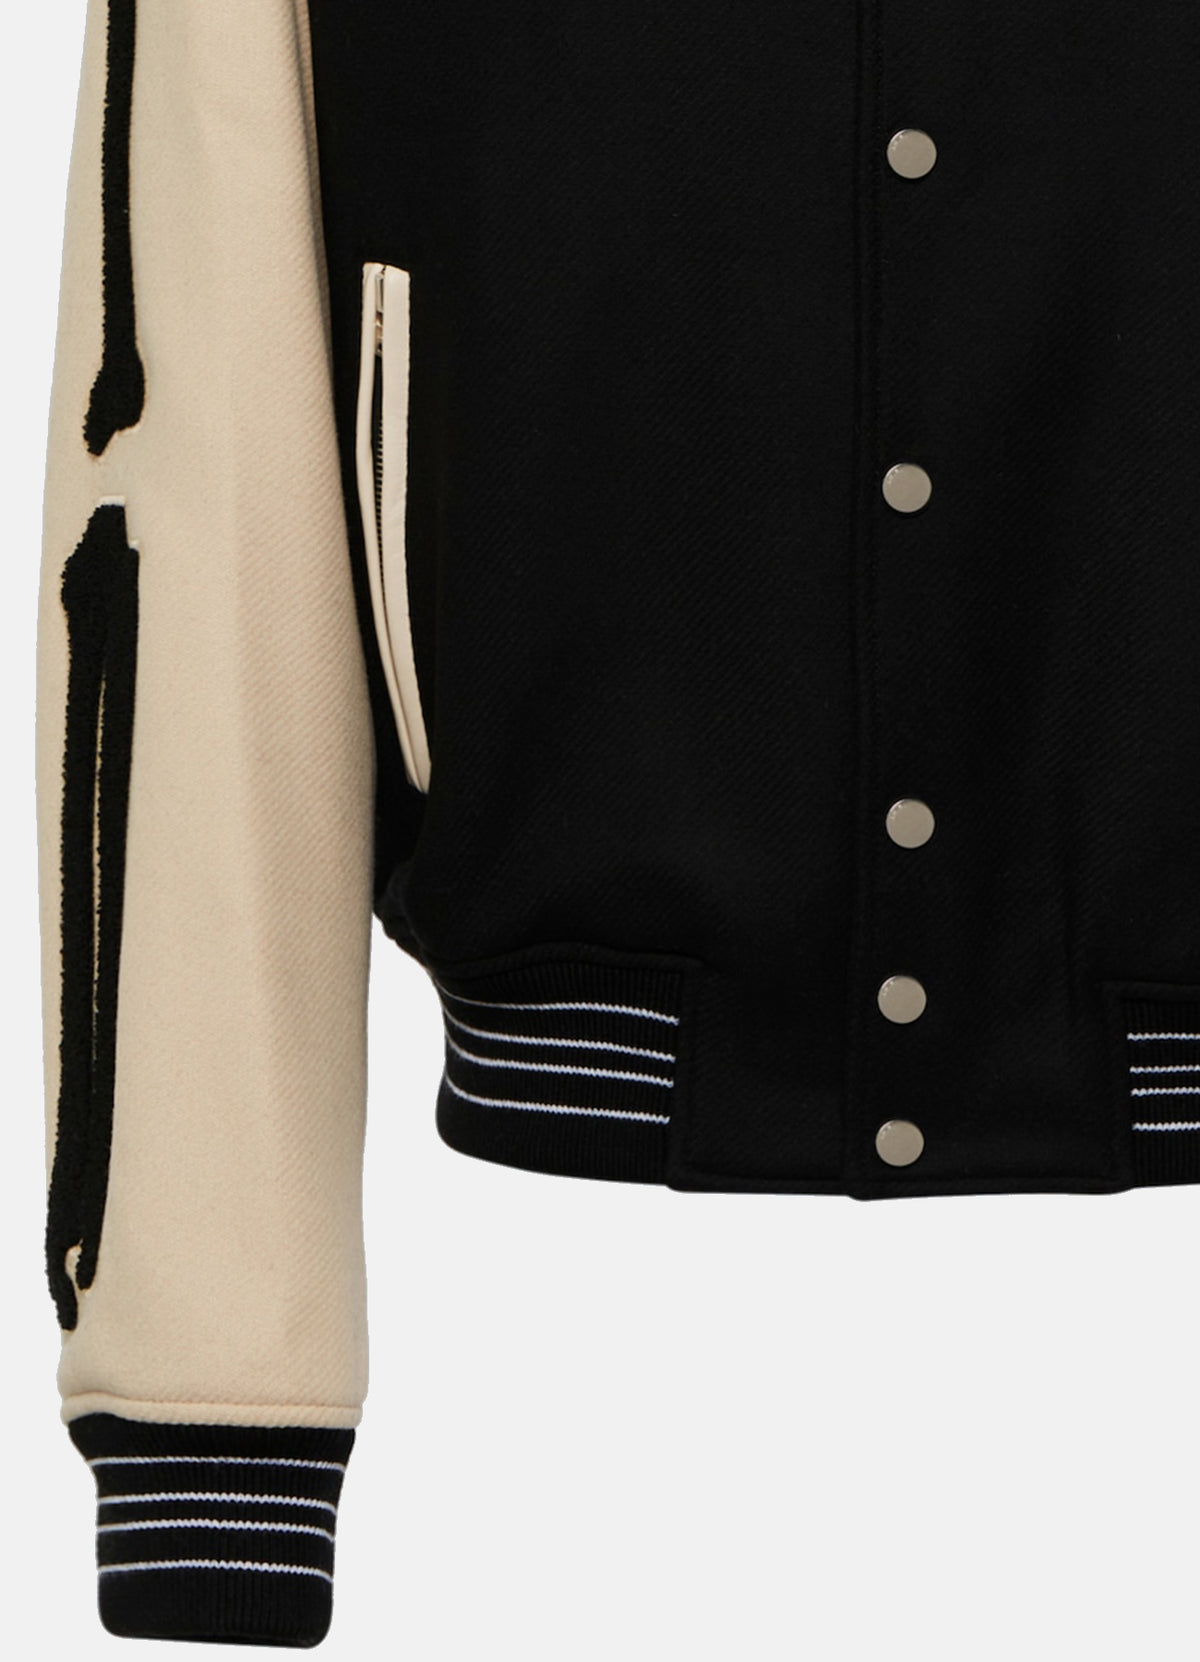 Mens Black and Beige Bone Design Varsity Jacket